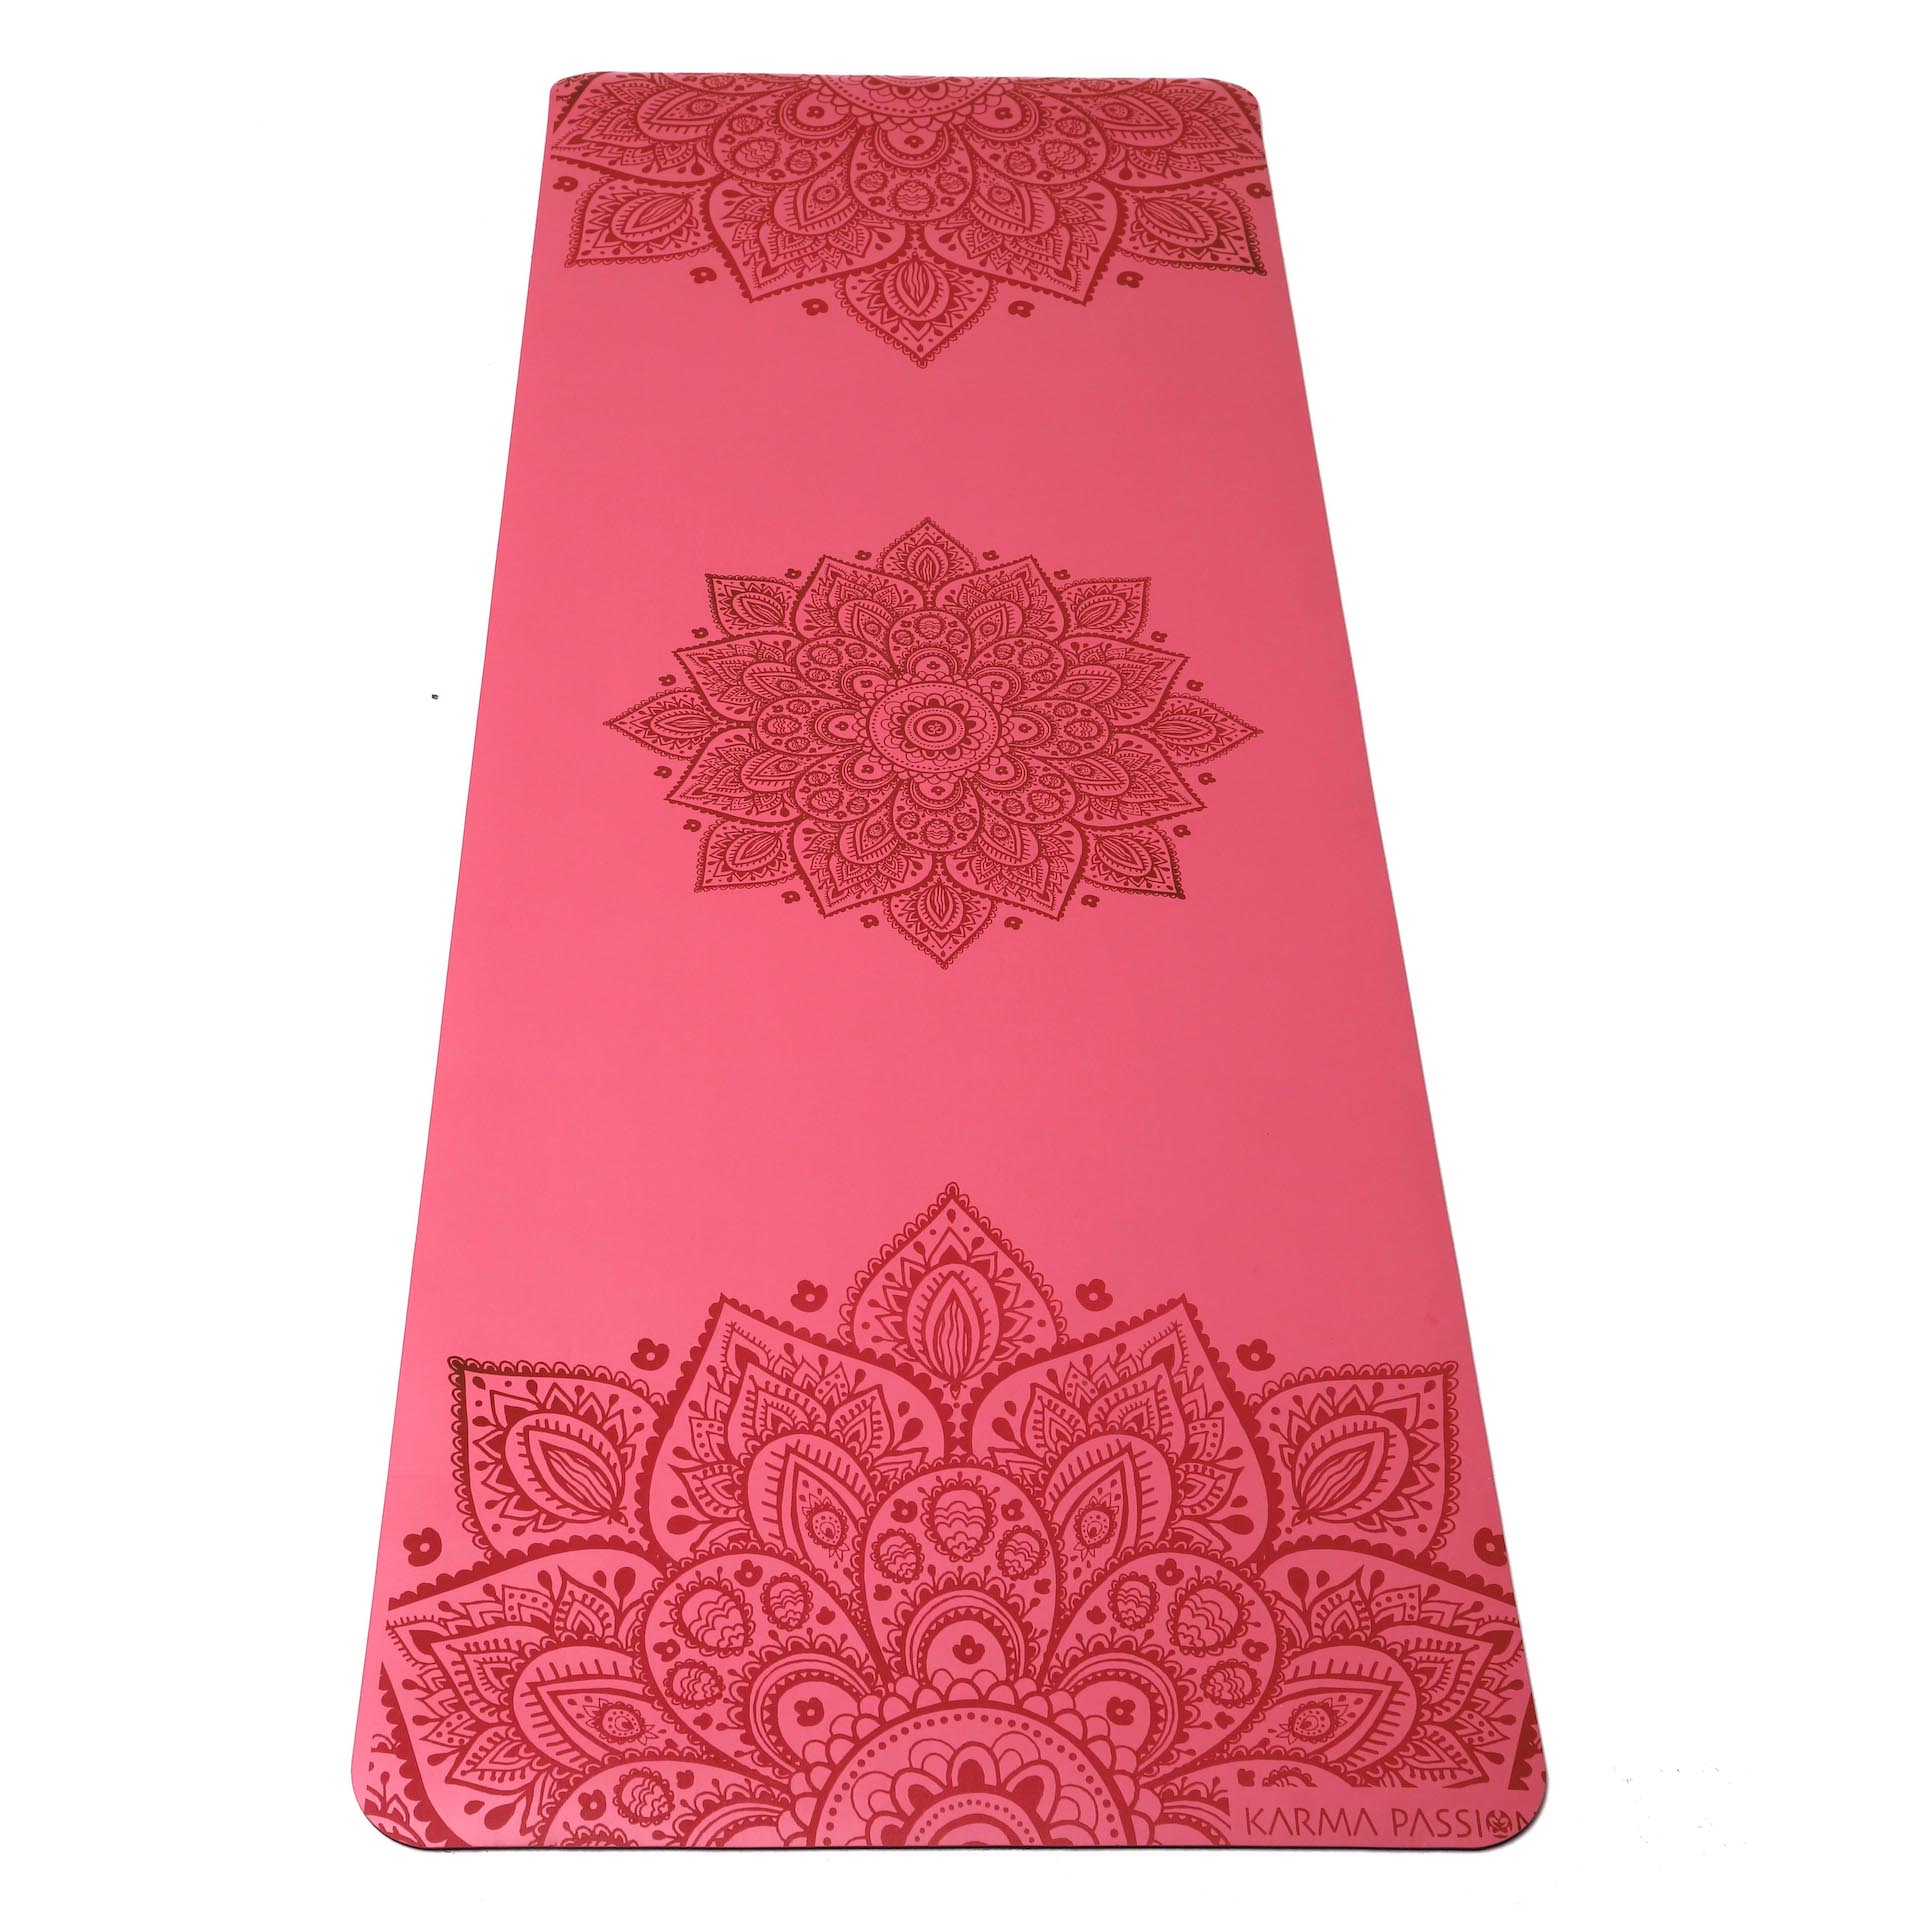 Tapis de yoga Pro Mandala Rose 5mm - karma passion pour le yoga